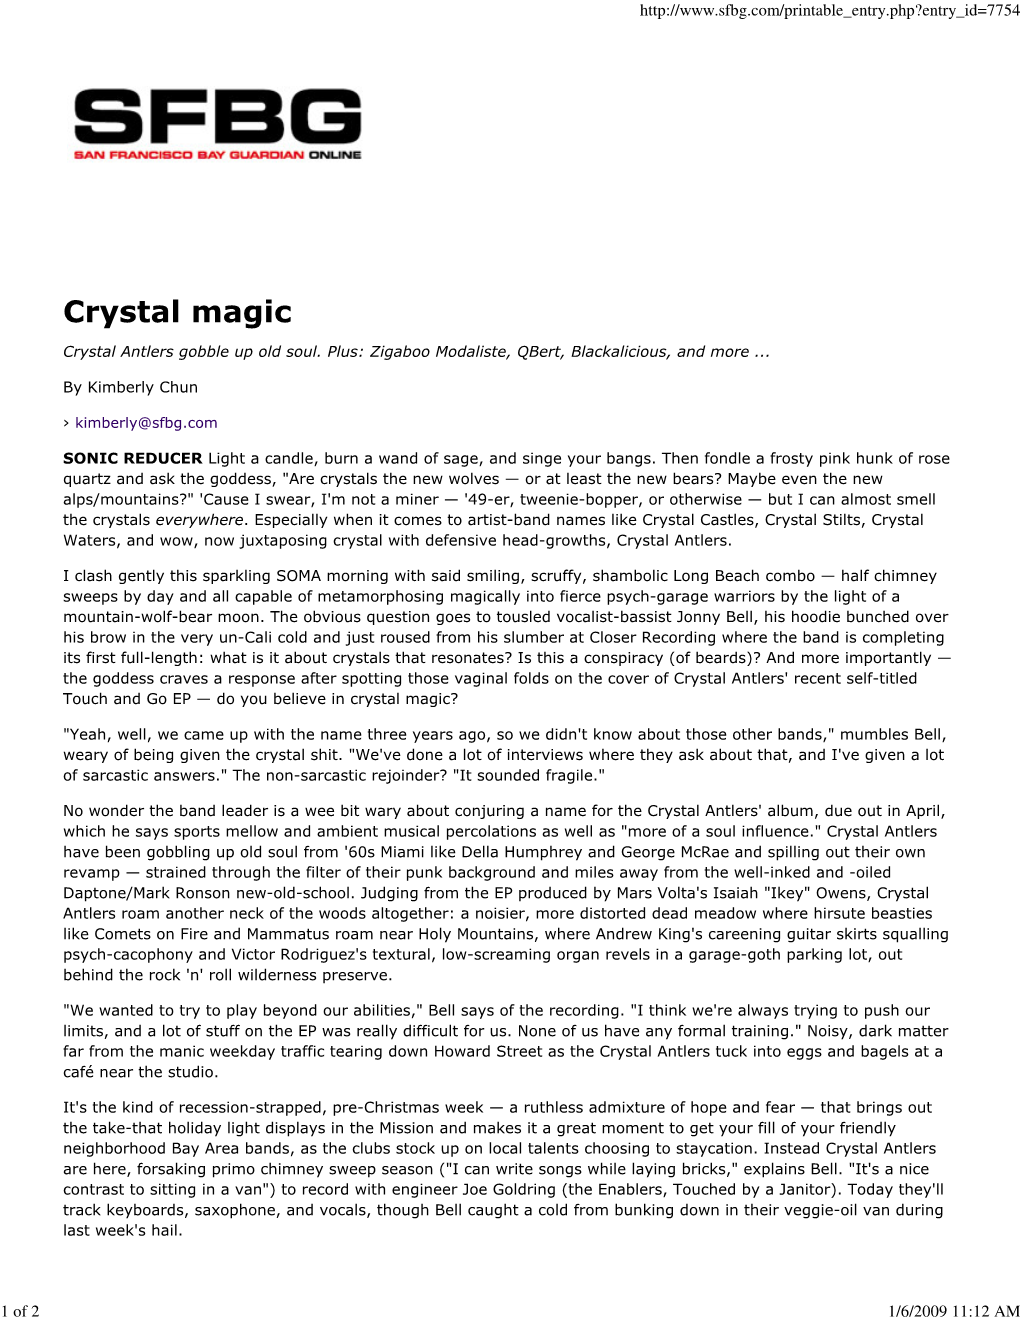 Crystal Magic